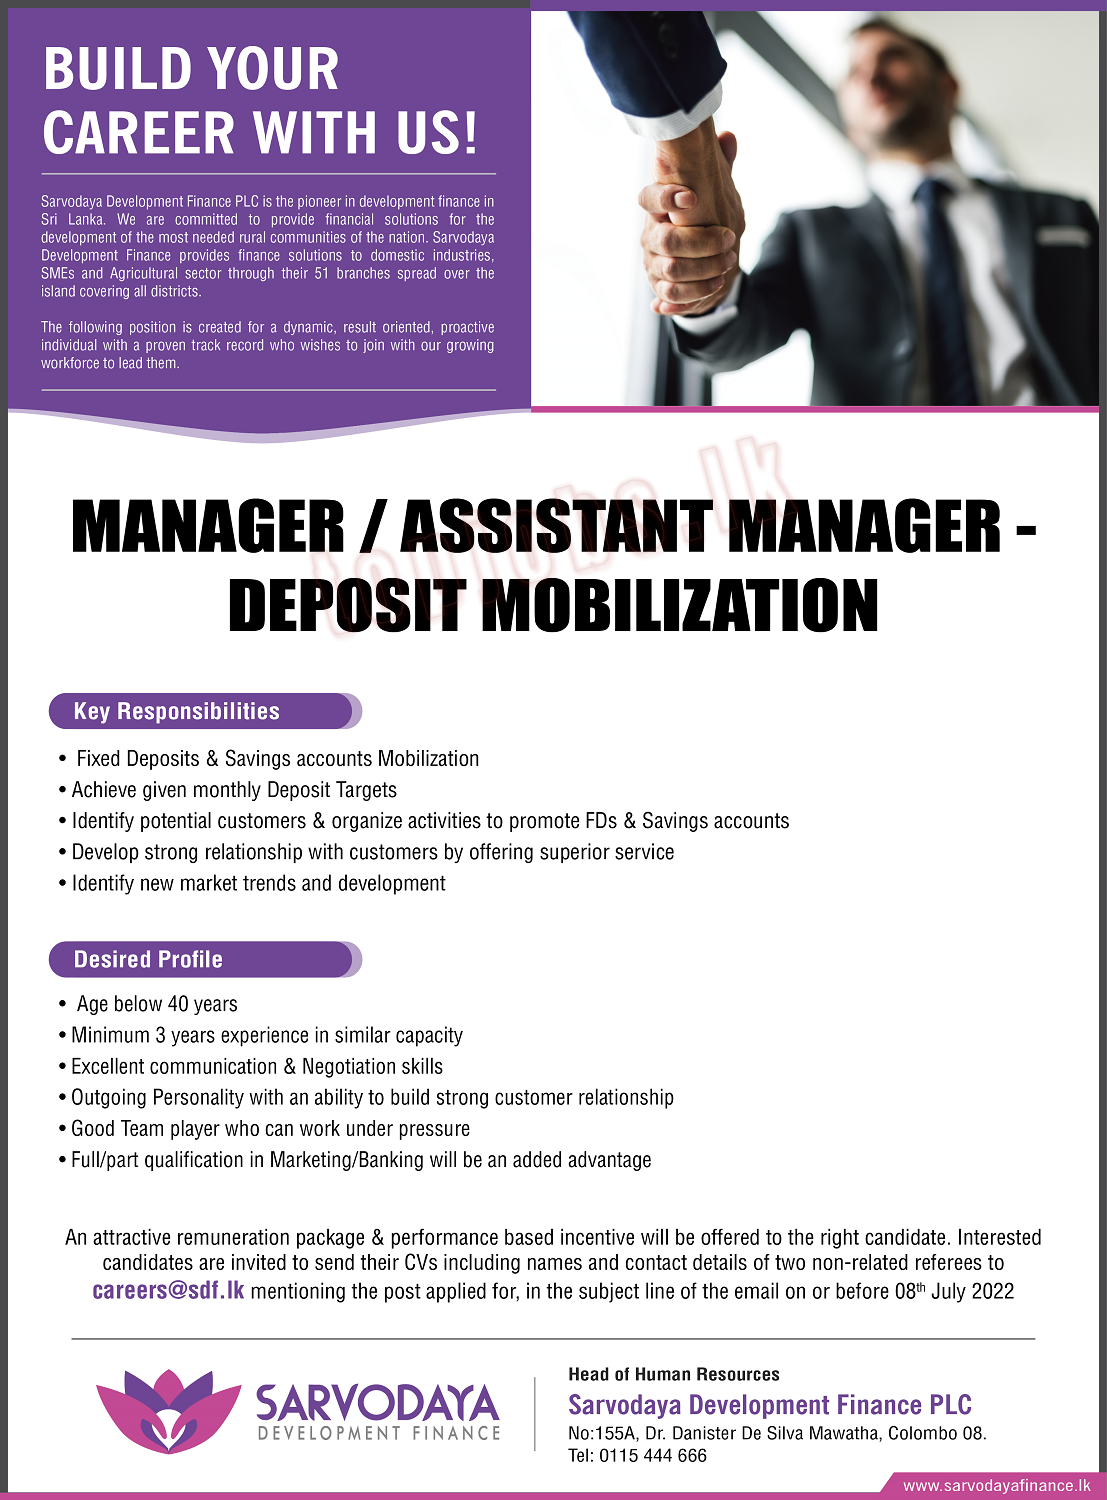 Manager / Assistant Manager (Deposit Mobilization) - Sarvodaya Finance Job Vacancy Details